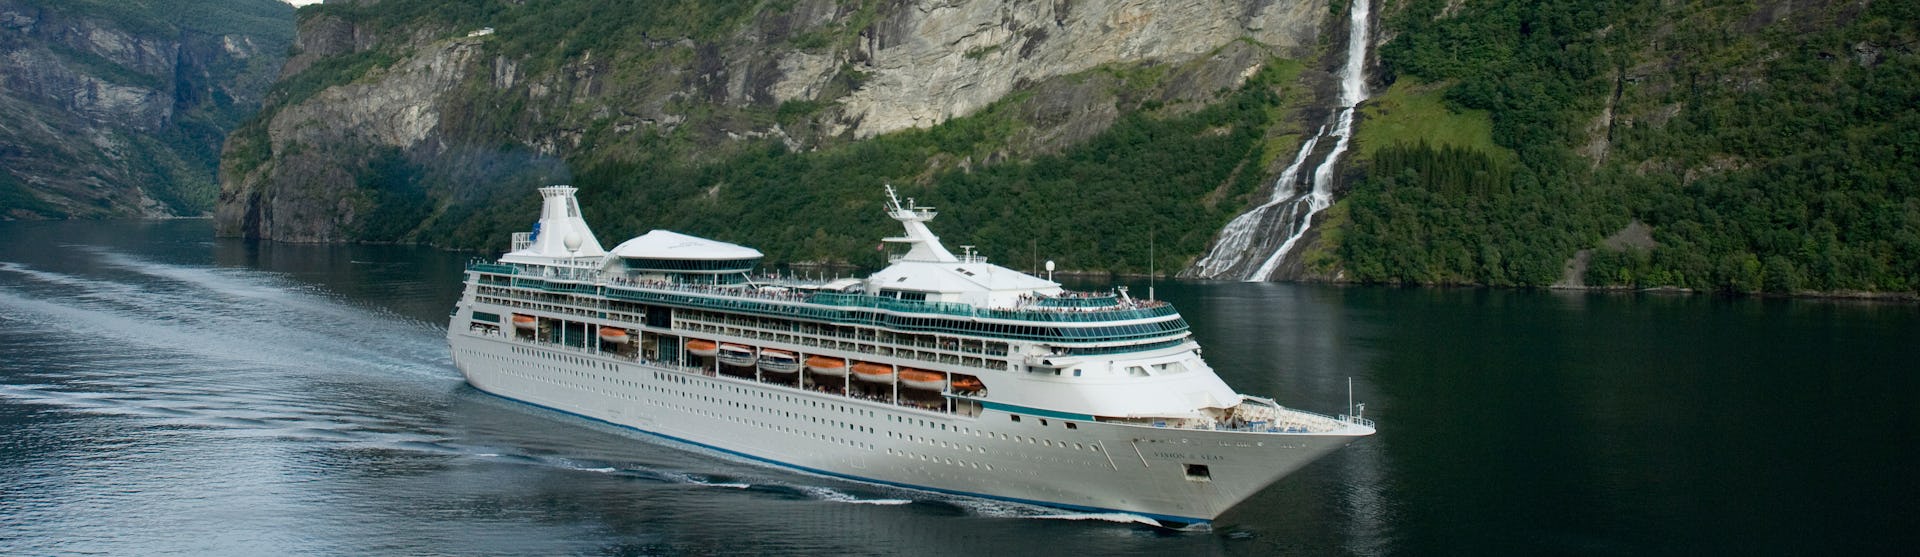 Vision of the Seas kryssar genom de storslagna norska fjordarna. I bakgrunden syns gröna berg och ett vattenfall.